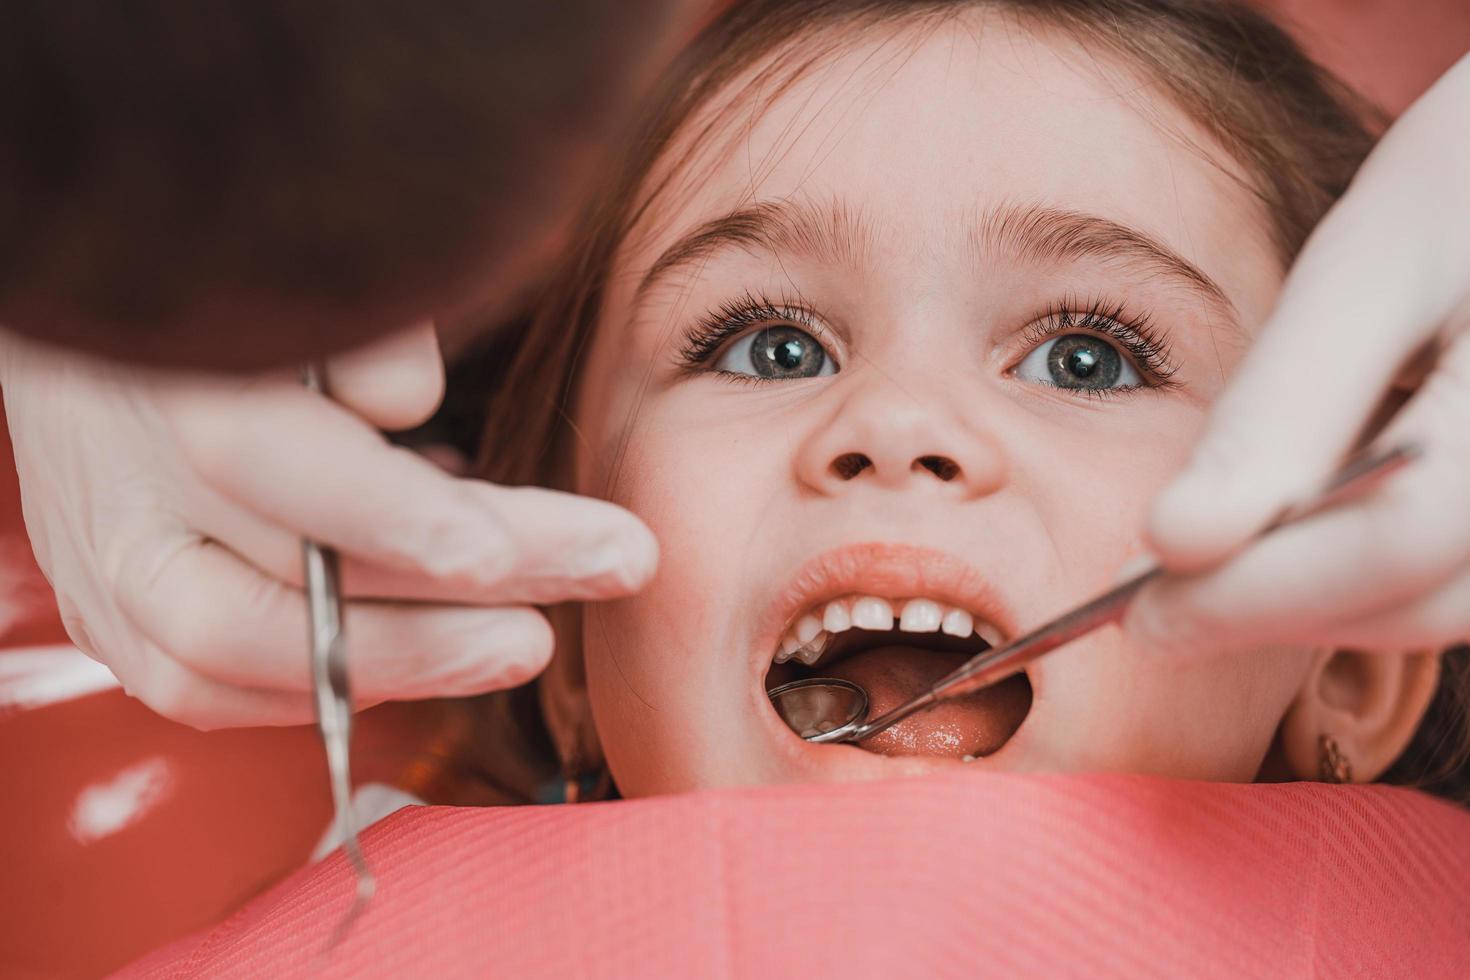 tratamento dos dentes de leite em uma criança, uma garotinha no dentista, exame e tratamento dos dentes. foto